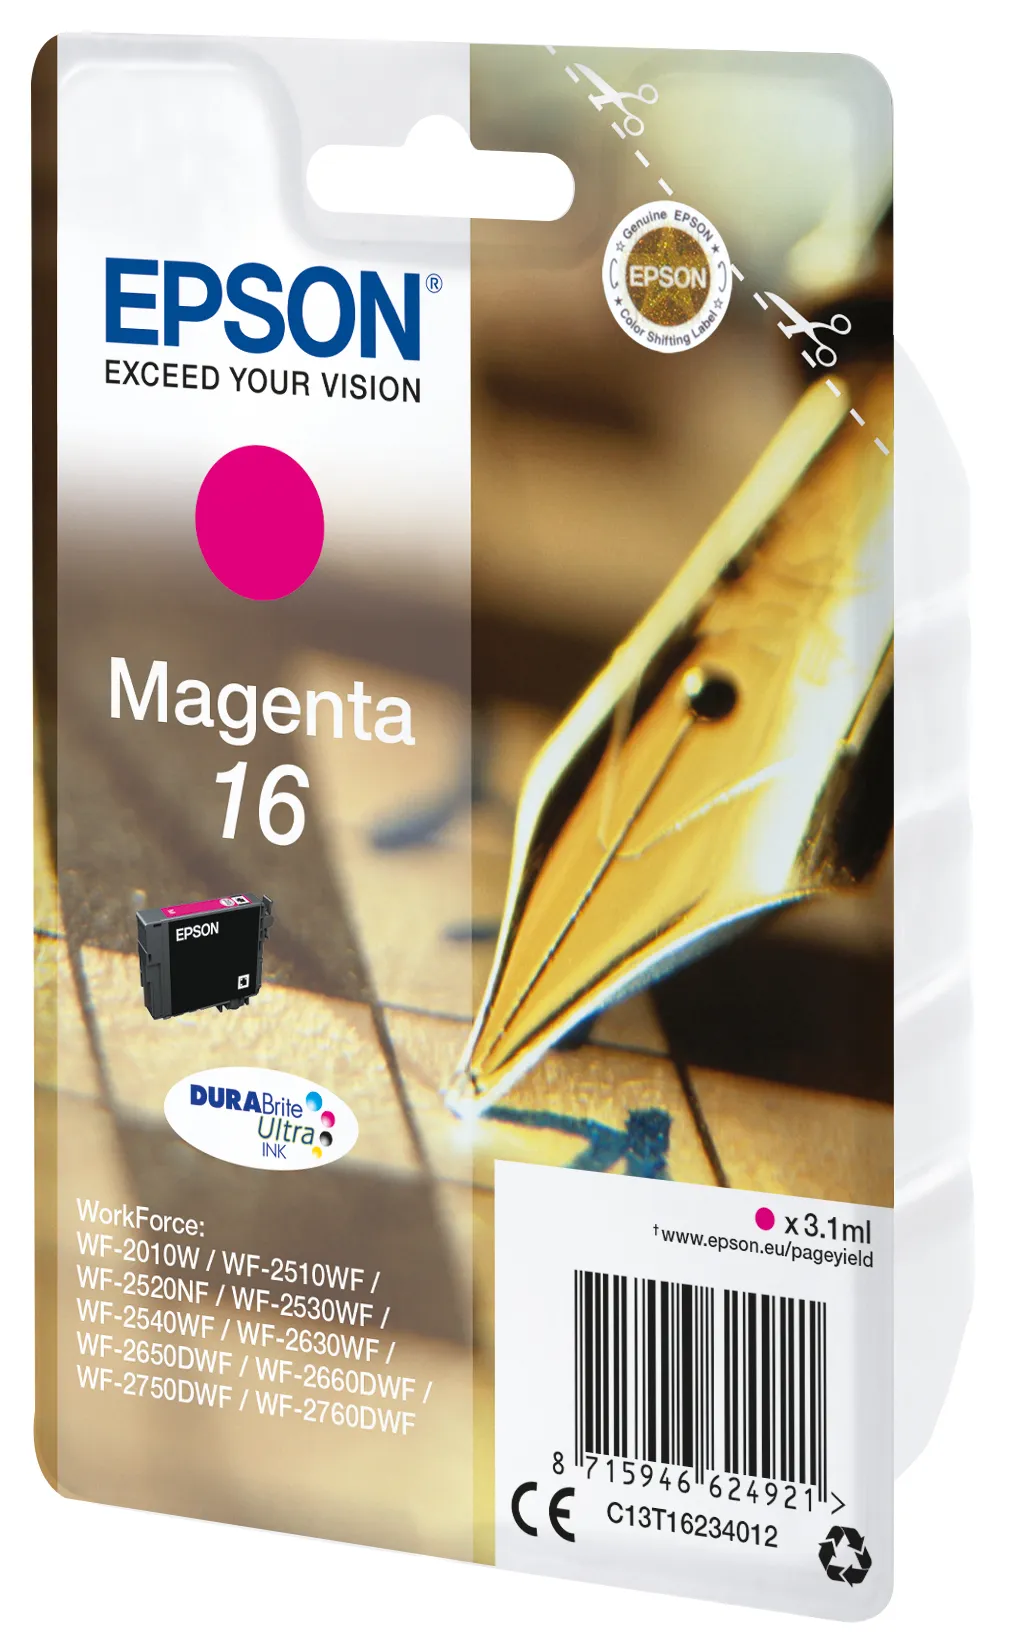 Vente EPSON 16 cartouche encre magenta capacité standard 3.1ml Epson au meilleur prix - visuel 4